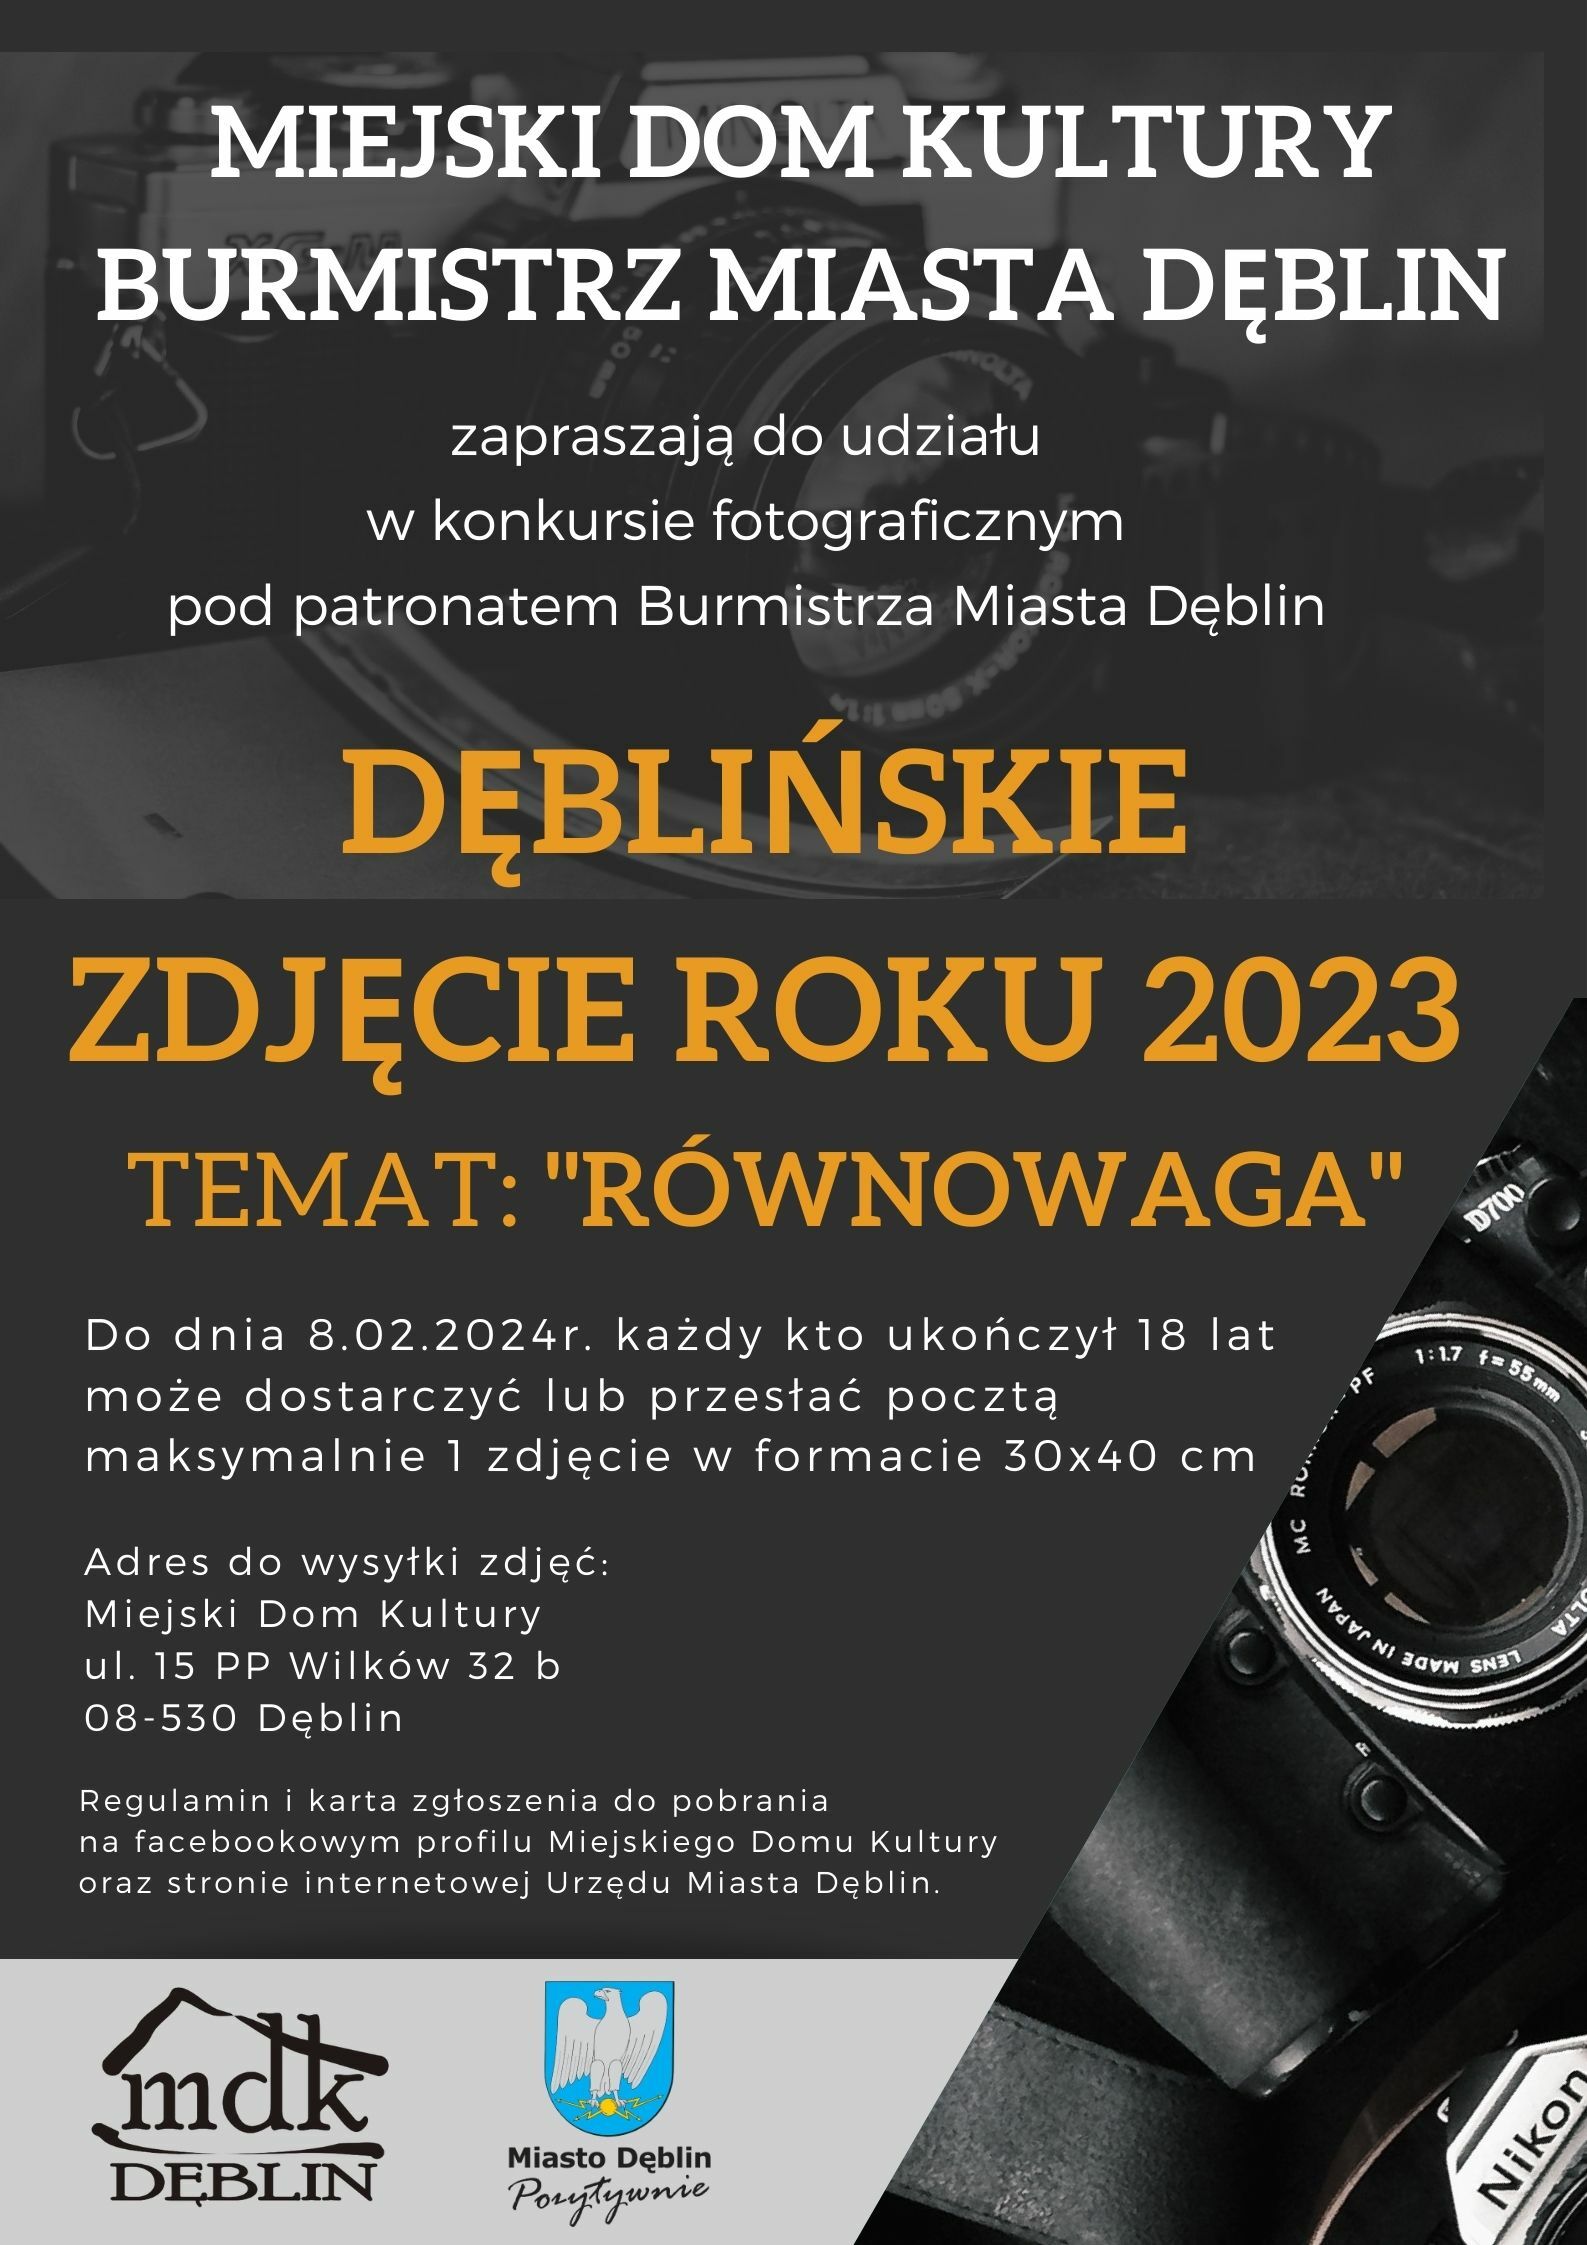 Plakat konkursu fotograficznego o tematyce miejskiej z aparatem na pierwszym planie, informacjami o terminach i zasadach udziału oraz logotypami promującymi wydarzenie i miasto Dęblin.